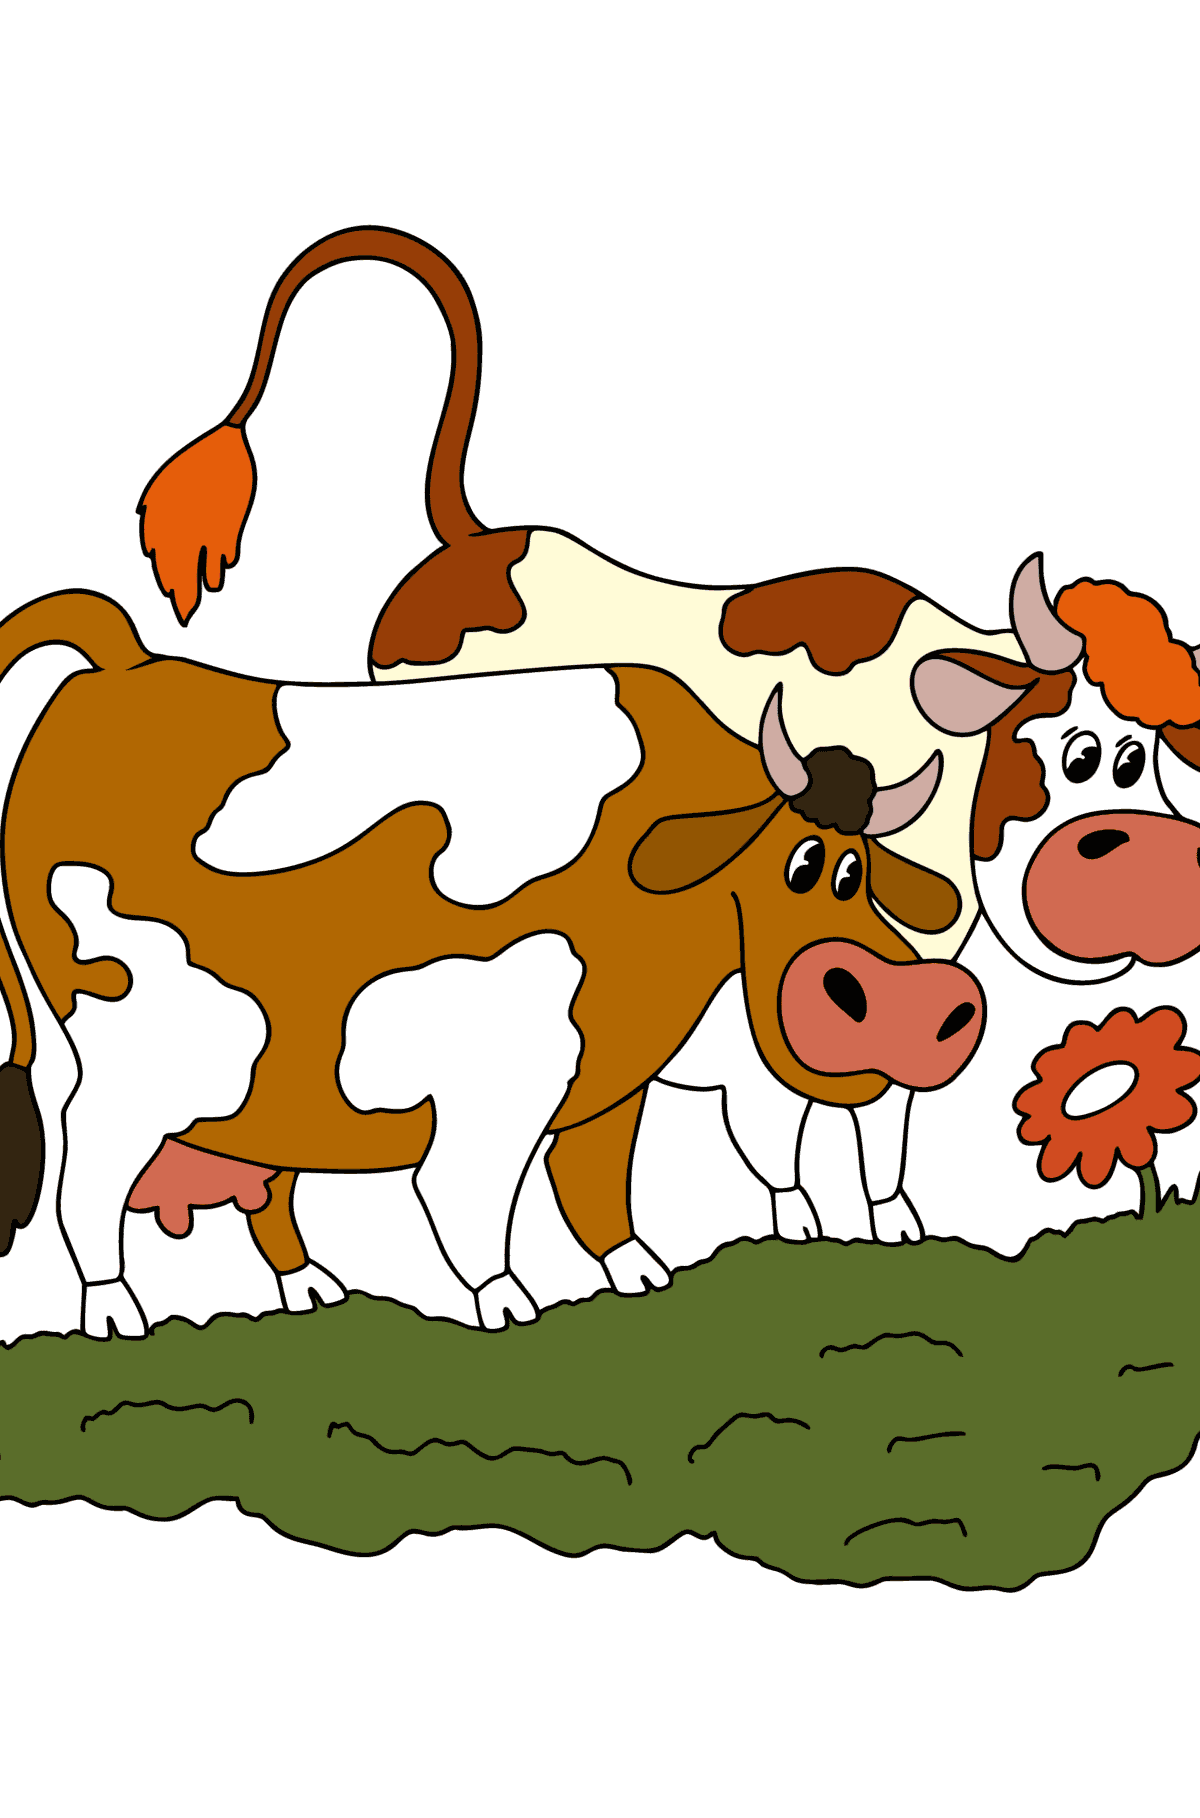 Dibujo de vacas para colorear - Dibujos para Colorear para Niños